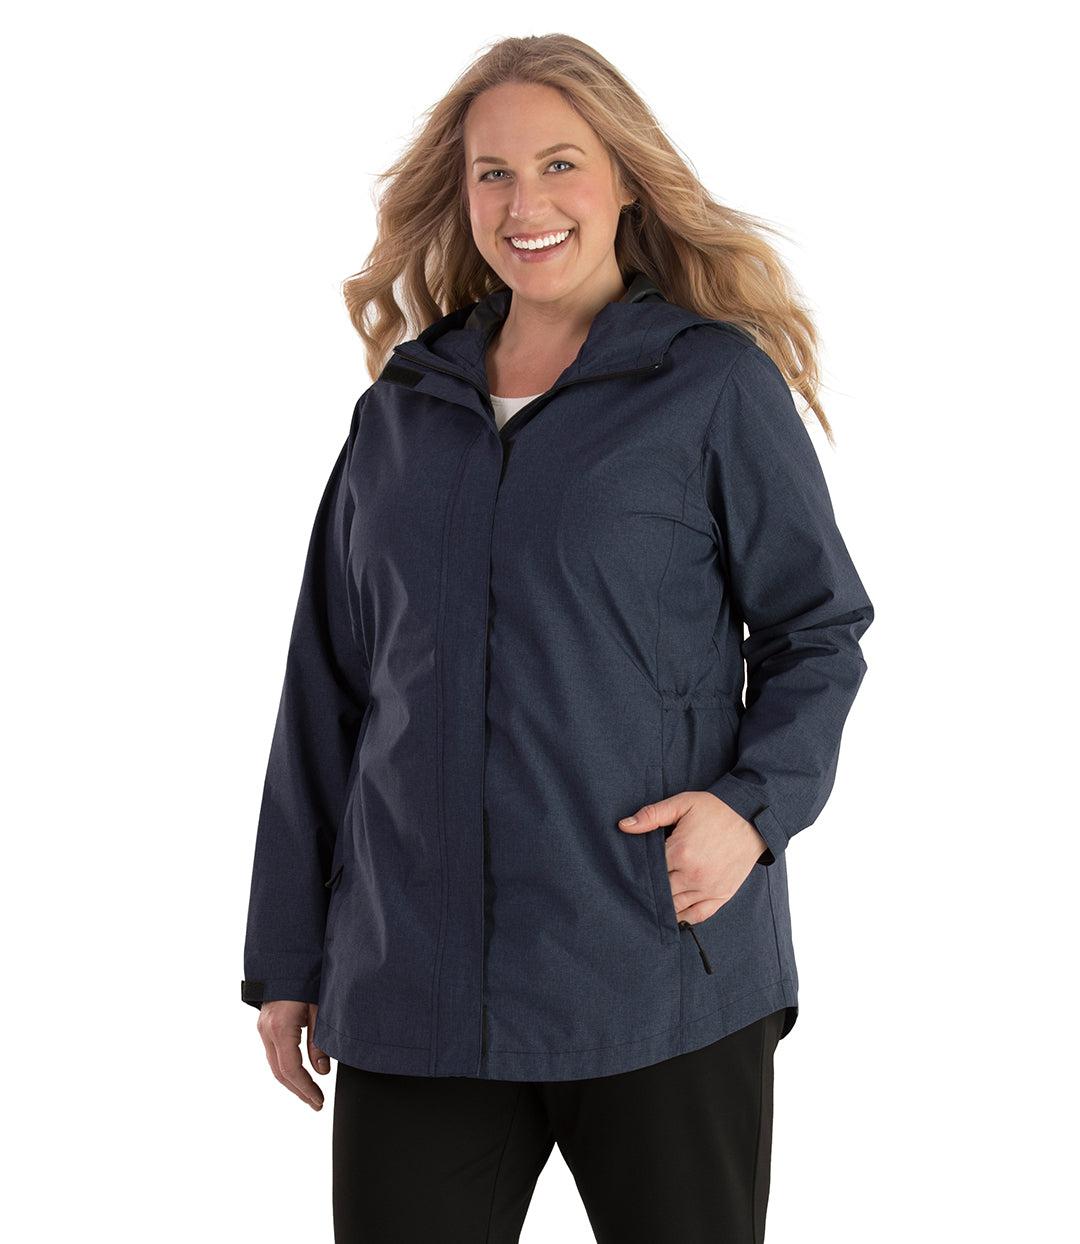 size 24 waterproof jacket